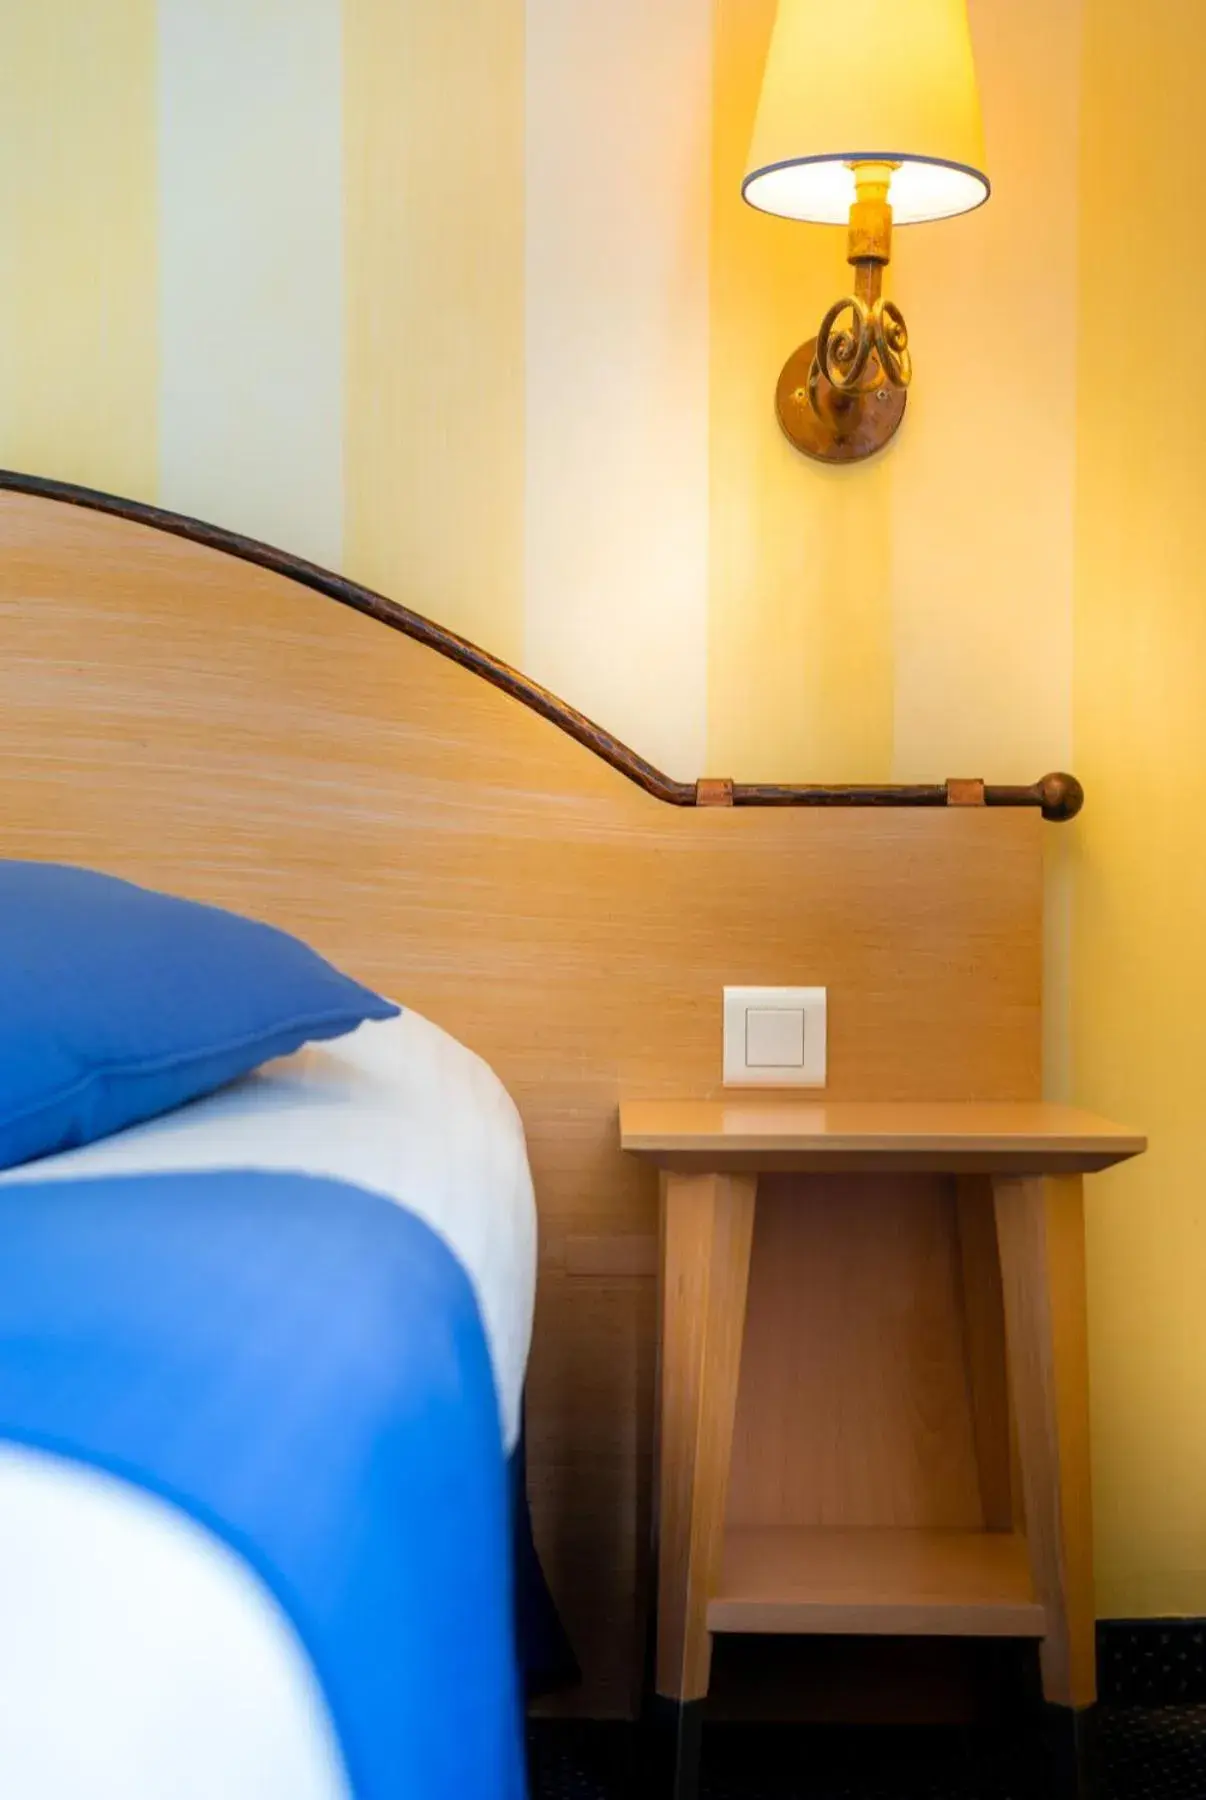 Bed in Hotel Delambre